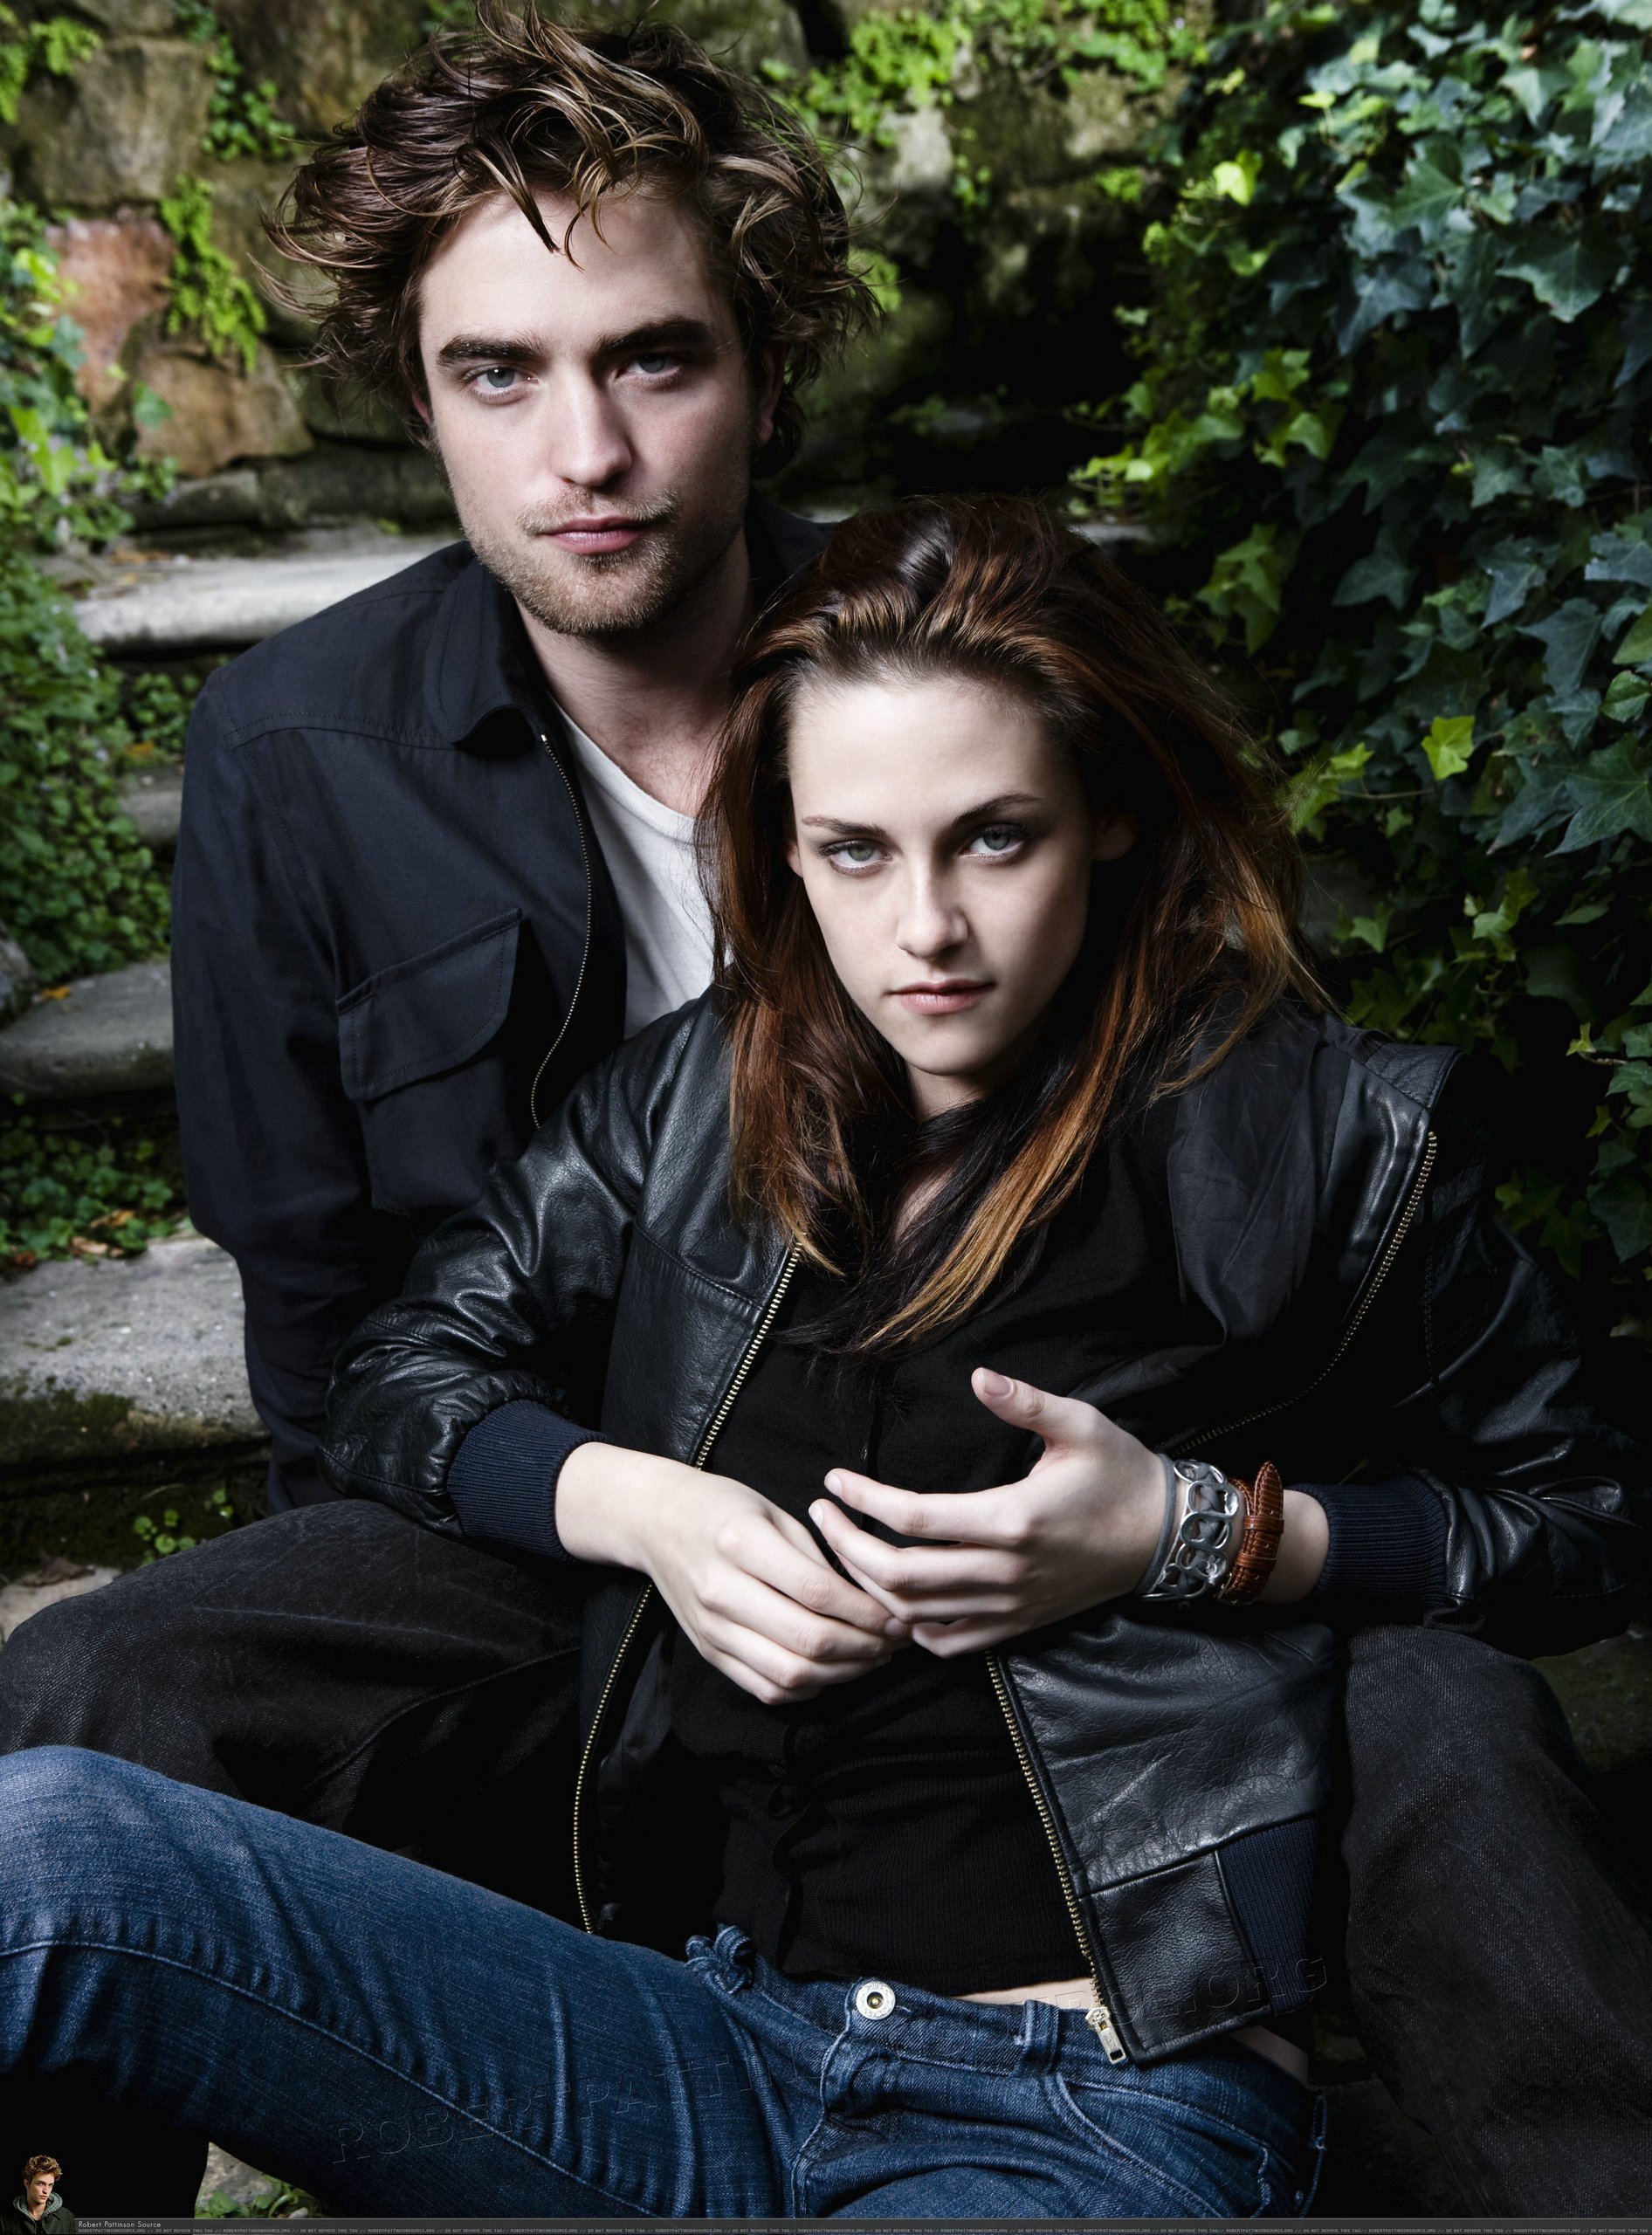 Robert Pattinson And Kristen Stewart Vanity Fair Italy Twilight Series Photo 9476016 Fanpop